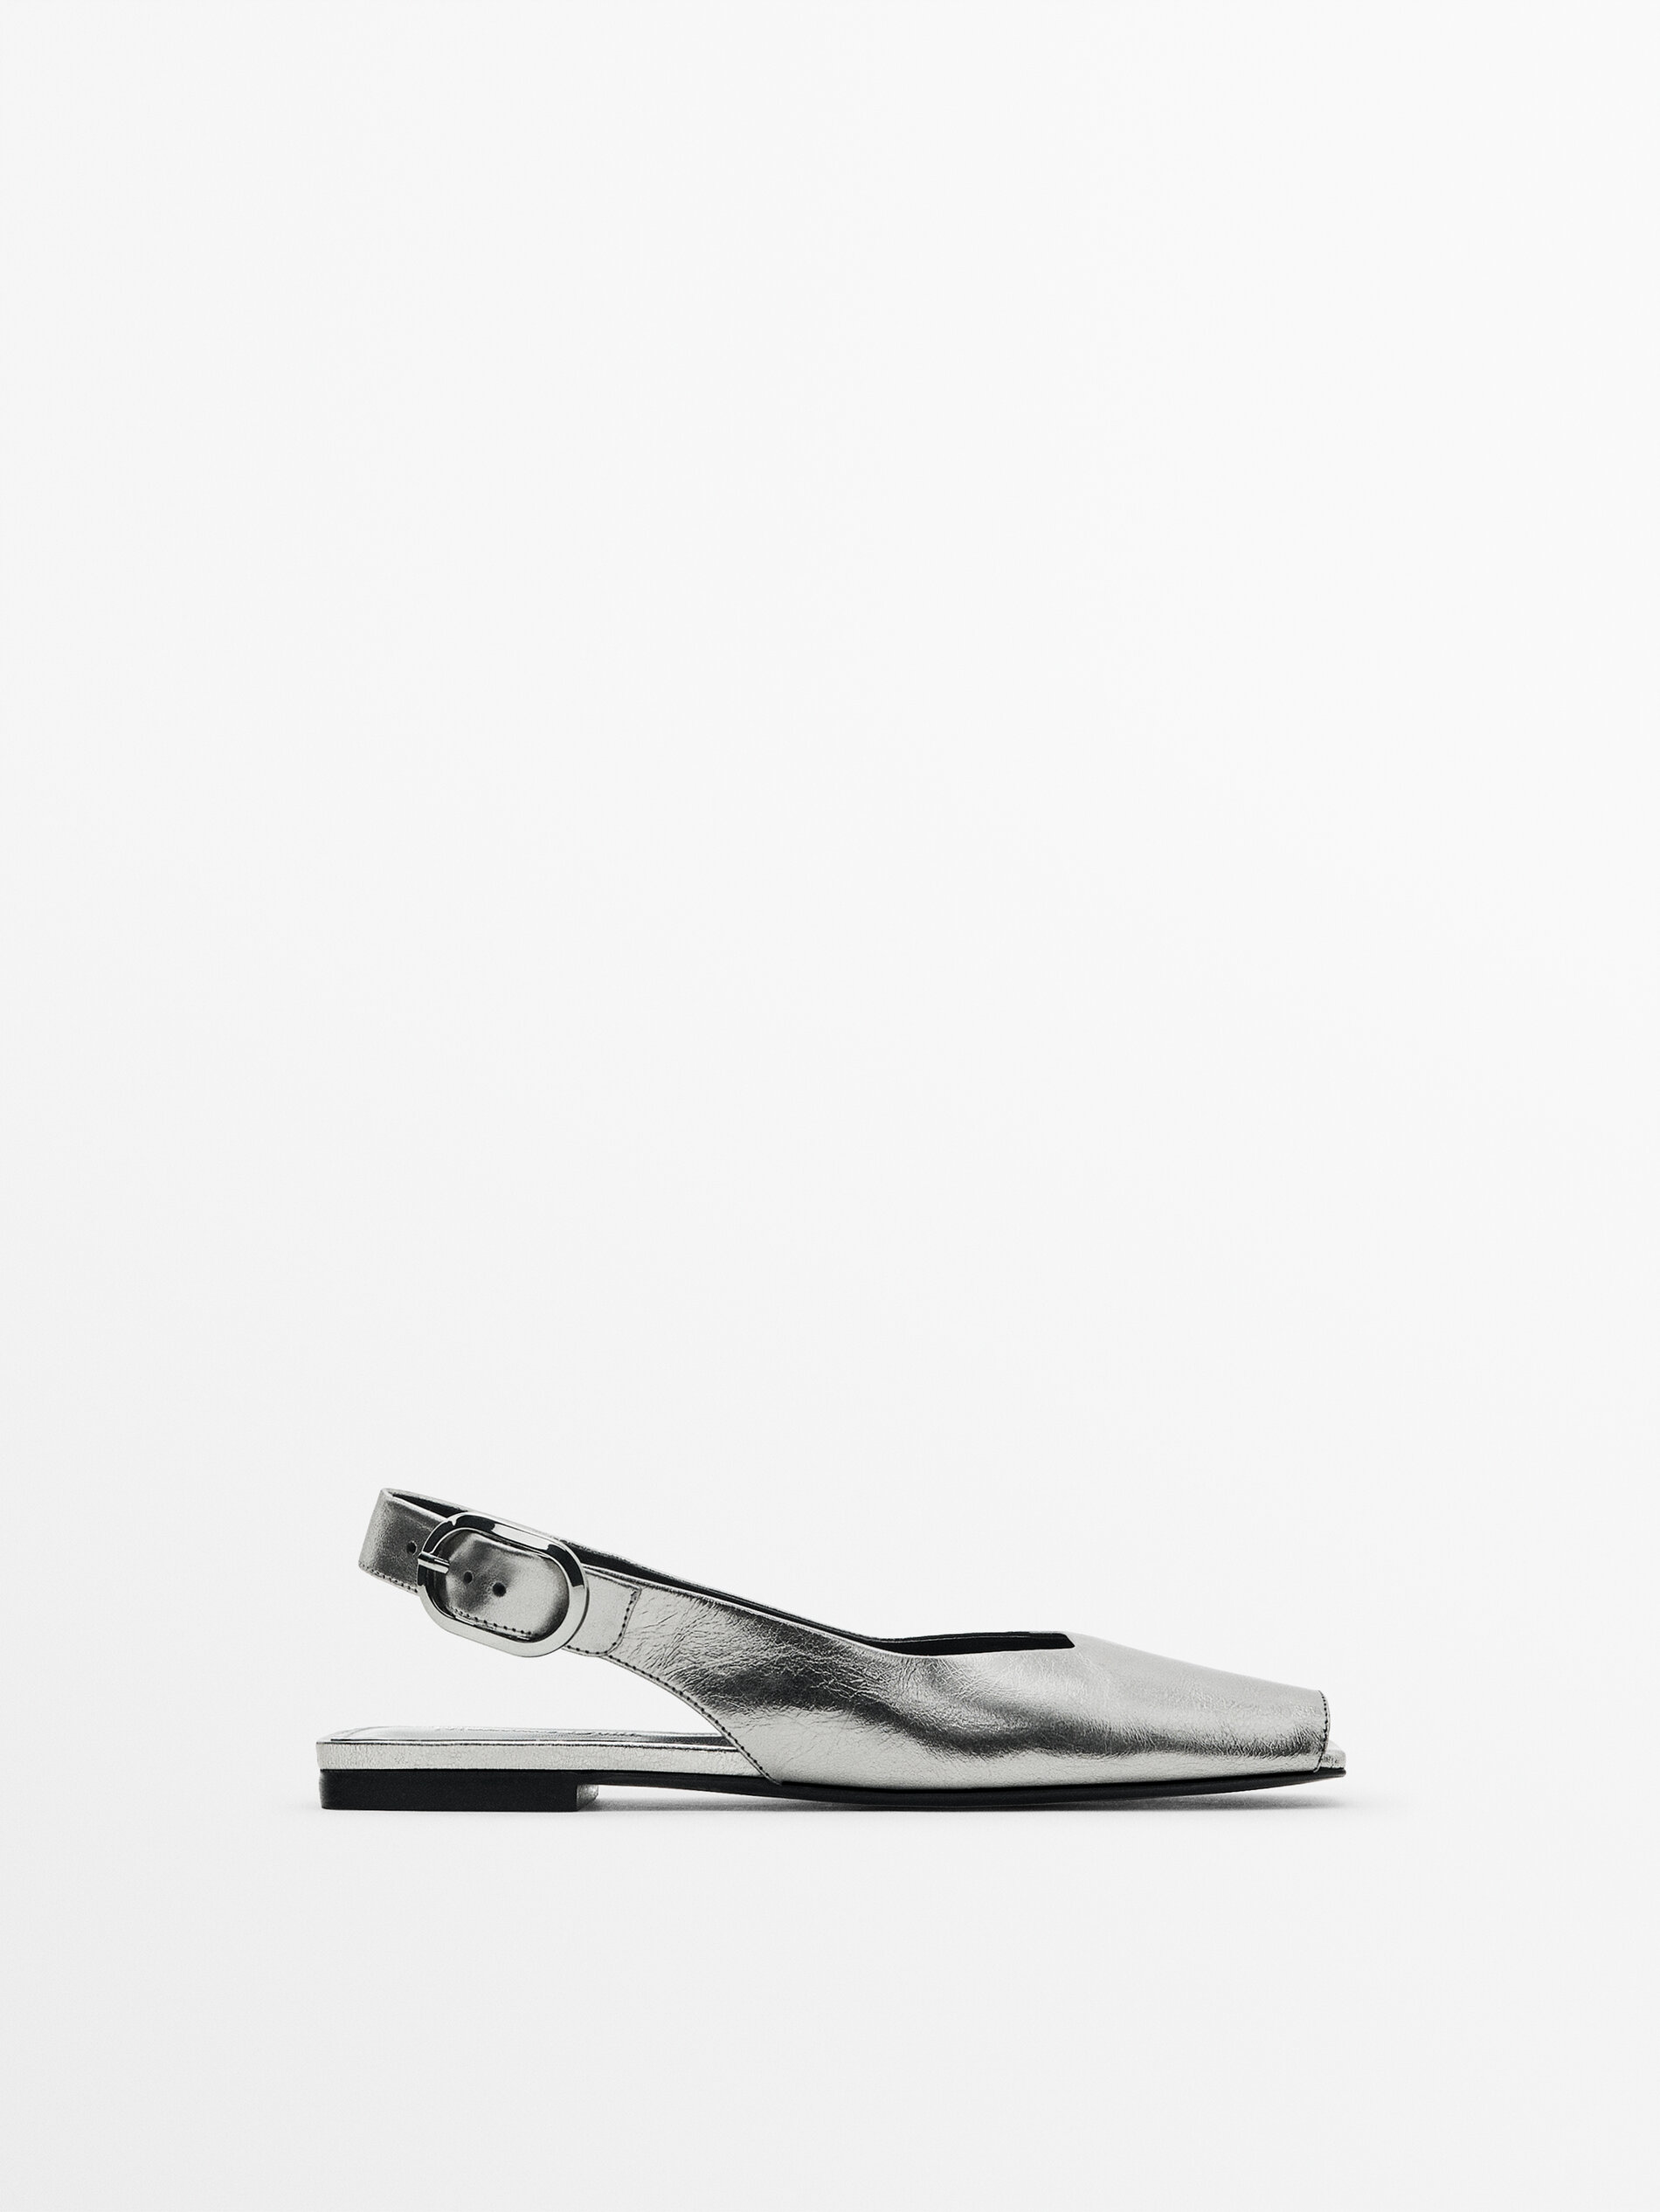 Zapato plano piel destalonado metalizado - PLATA